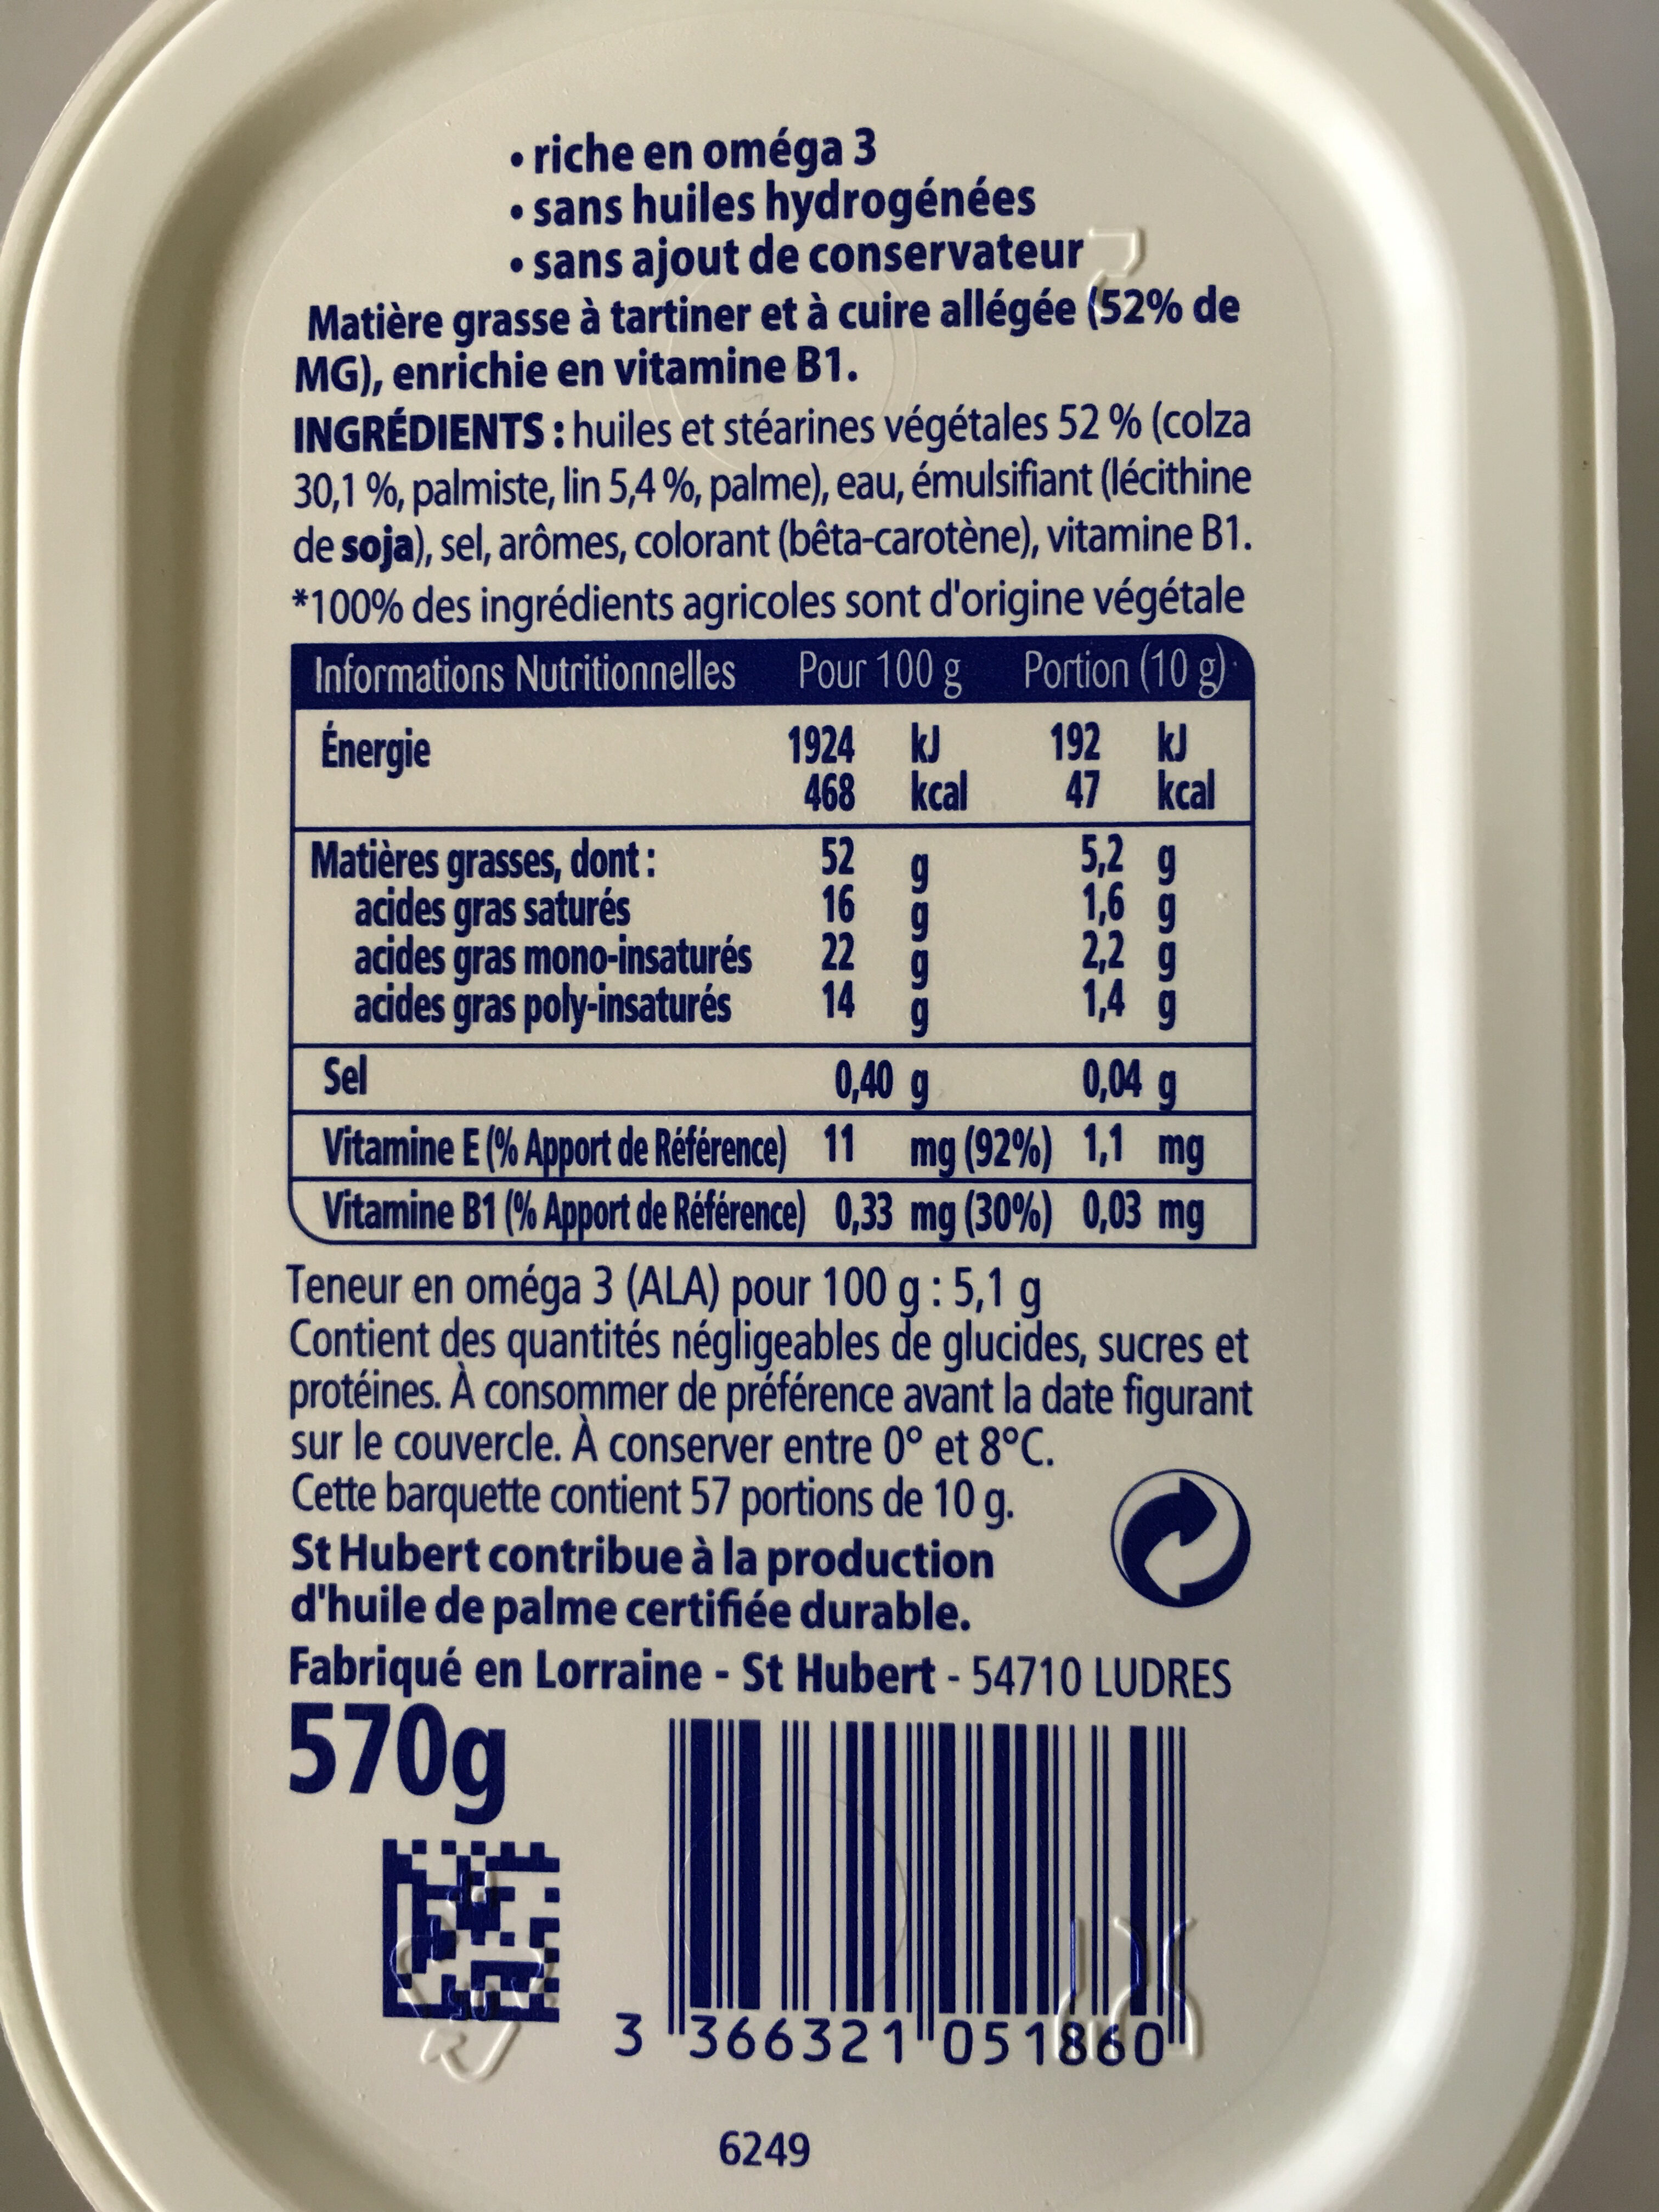 St hubert omega 3 570g doux - Ingredienser - fr